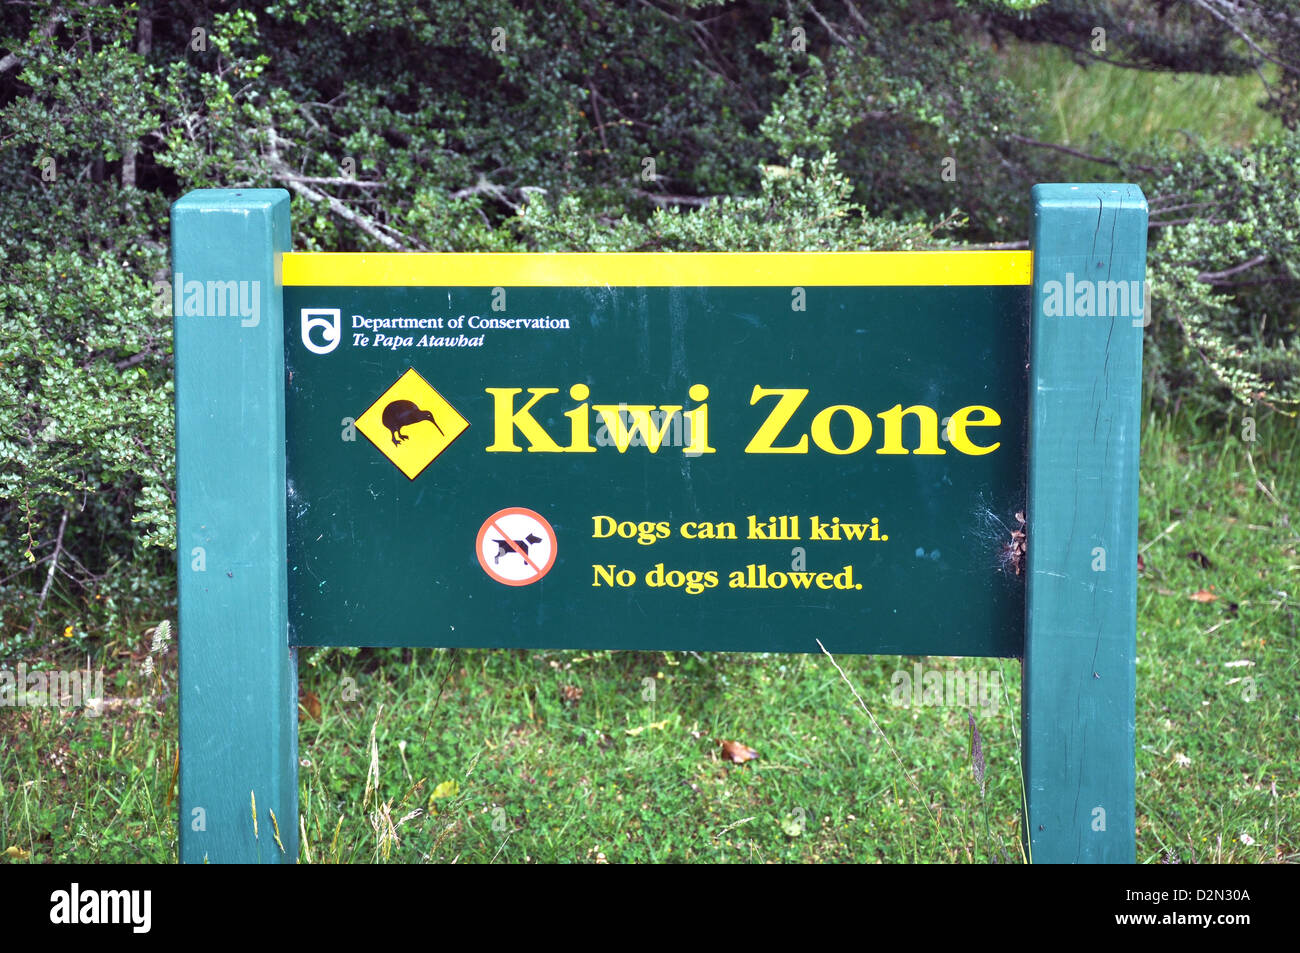 Zone Kiwi attention du ministère de la conservation, Chiens non admis - Île du Sud, Nouvelle-Zélande Banque D'Images